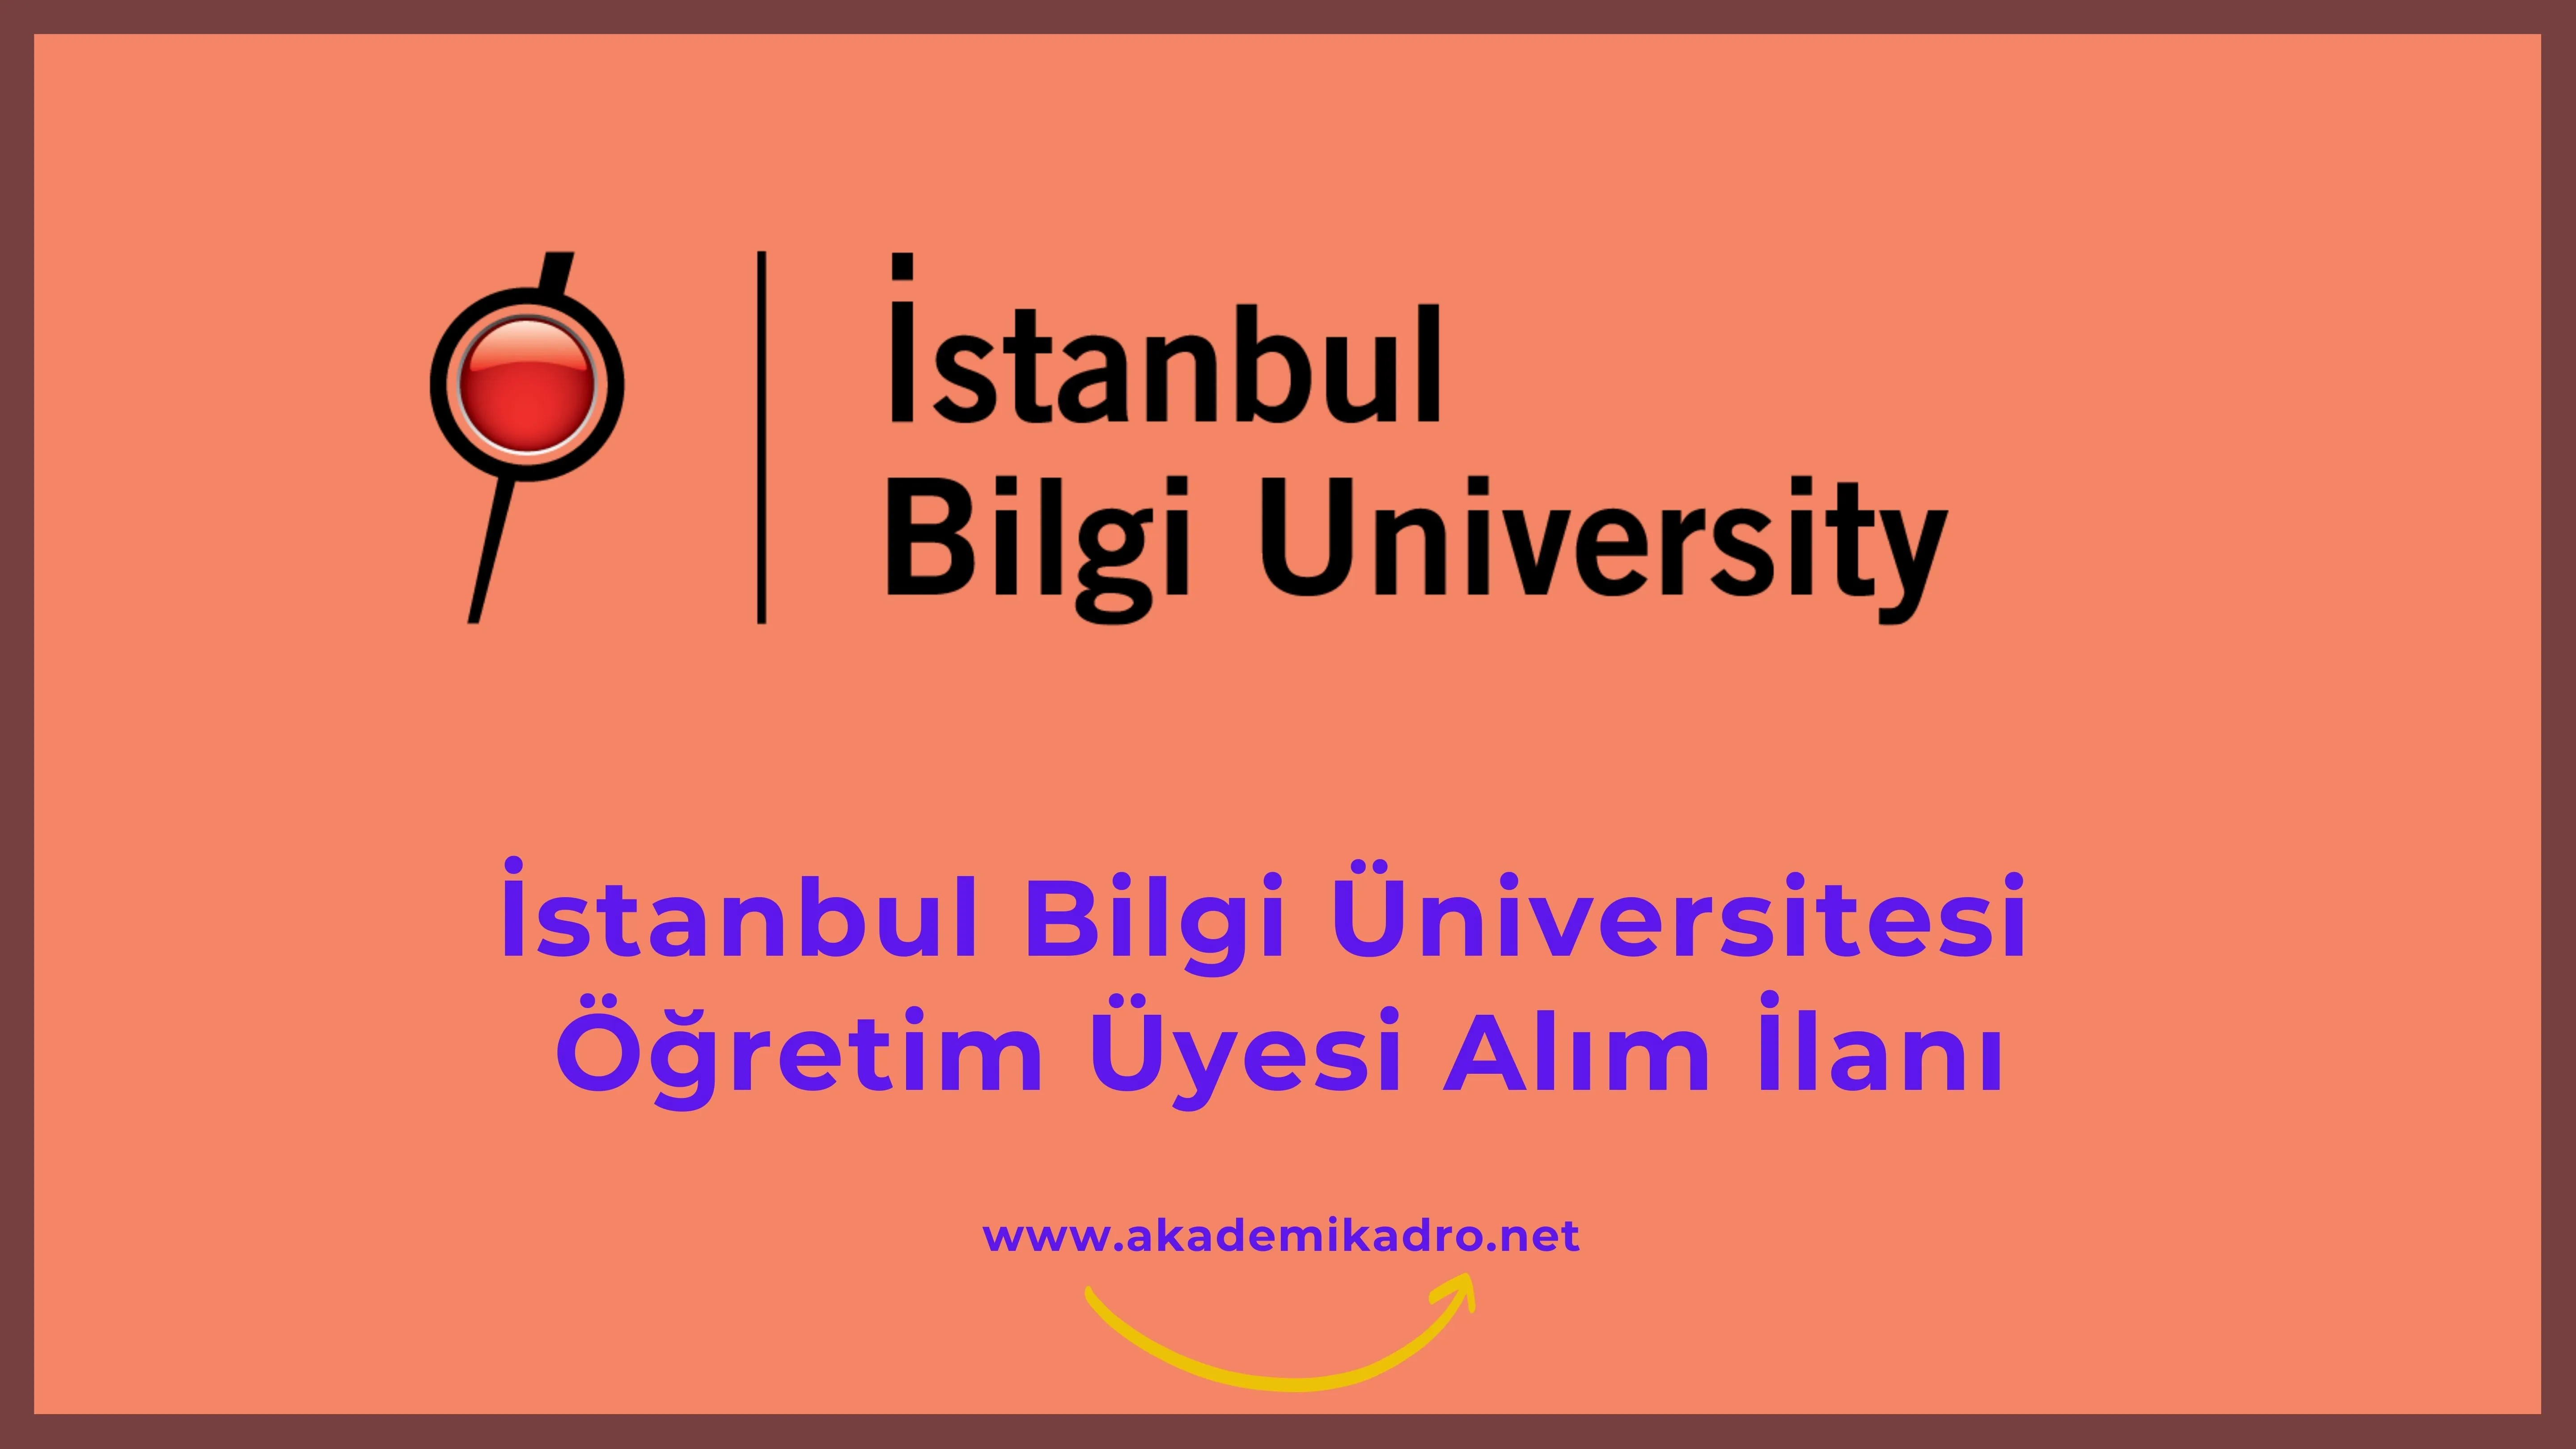 İstanbul Bilgi Üniversitesi 2 akademik personel alacak.